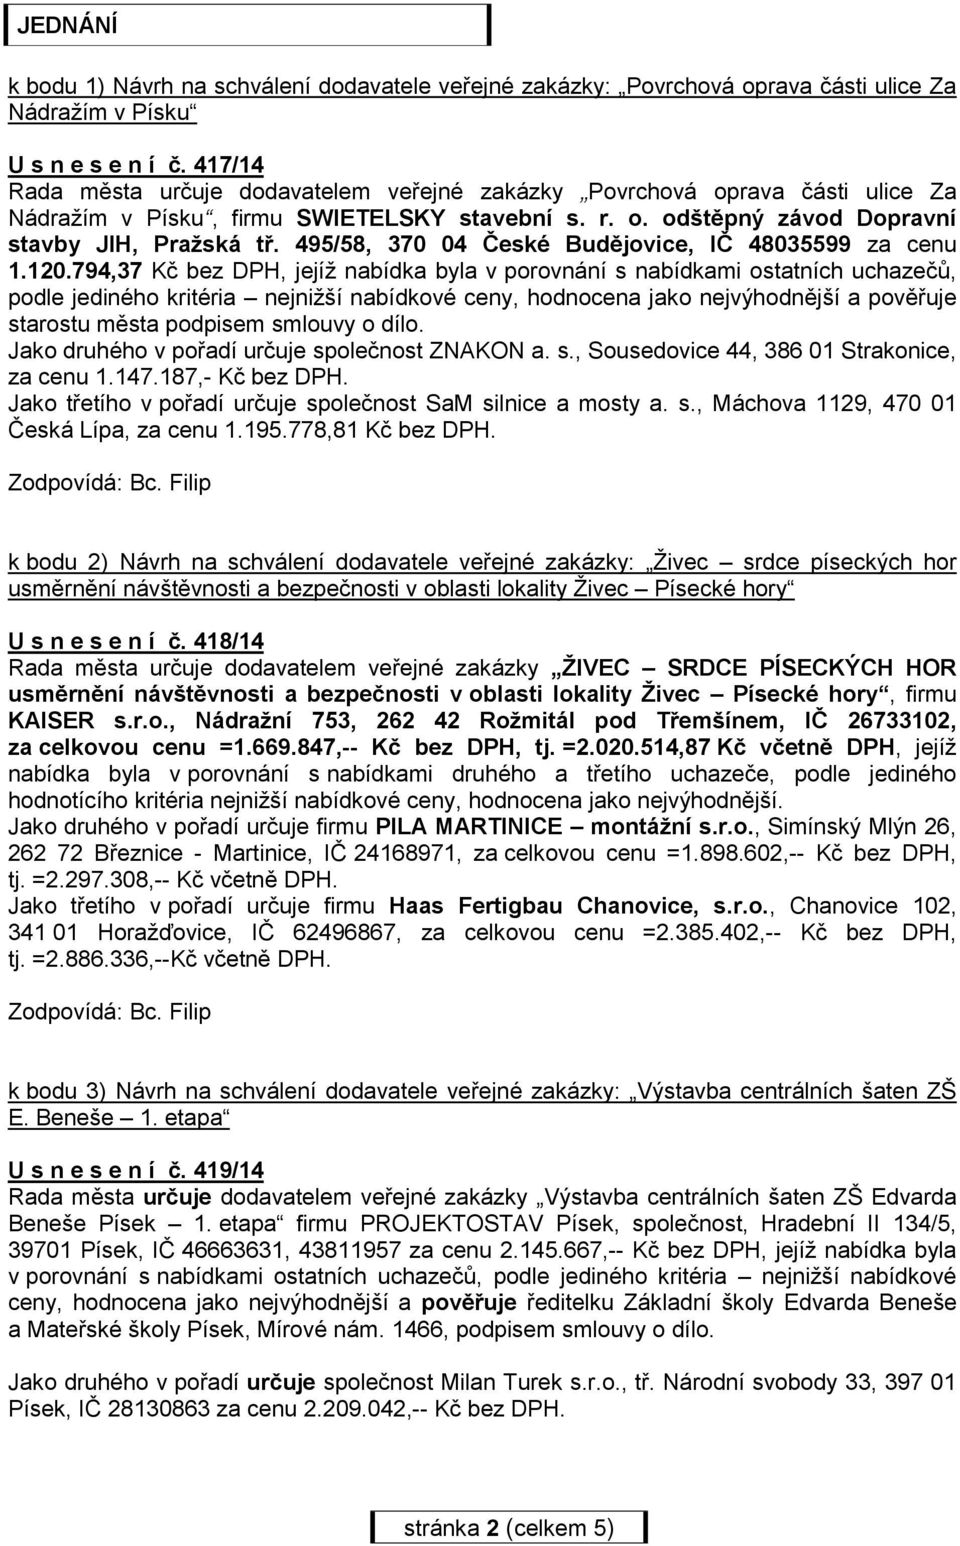 495/58, 370 04 České Budějovice, IČ 48035599 za cenu 1.120.